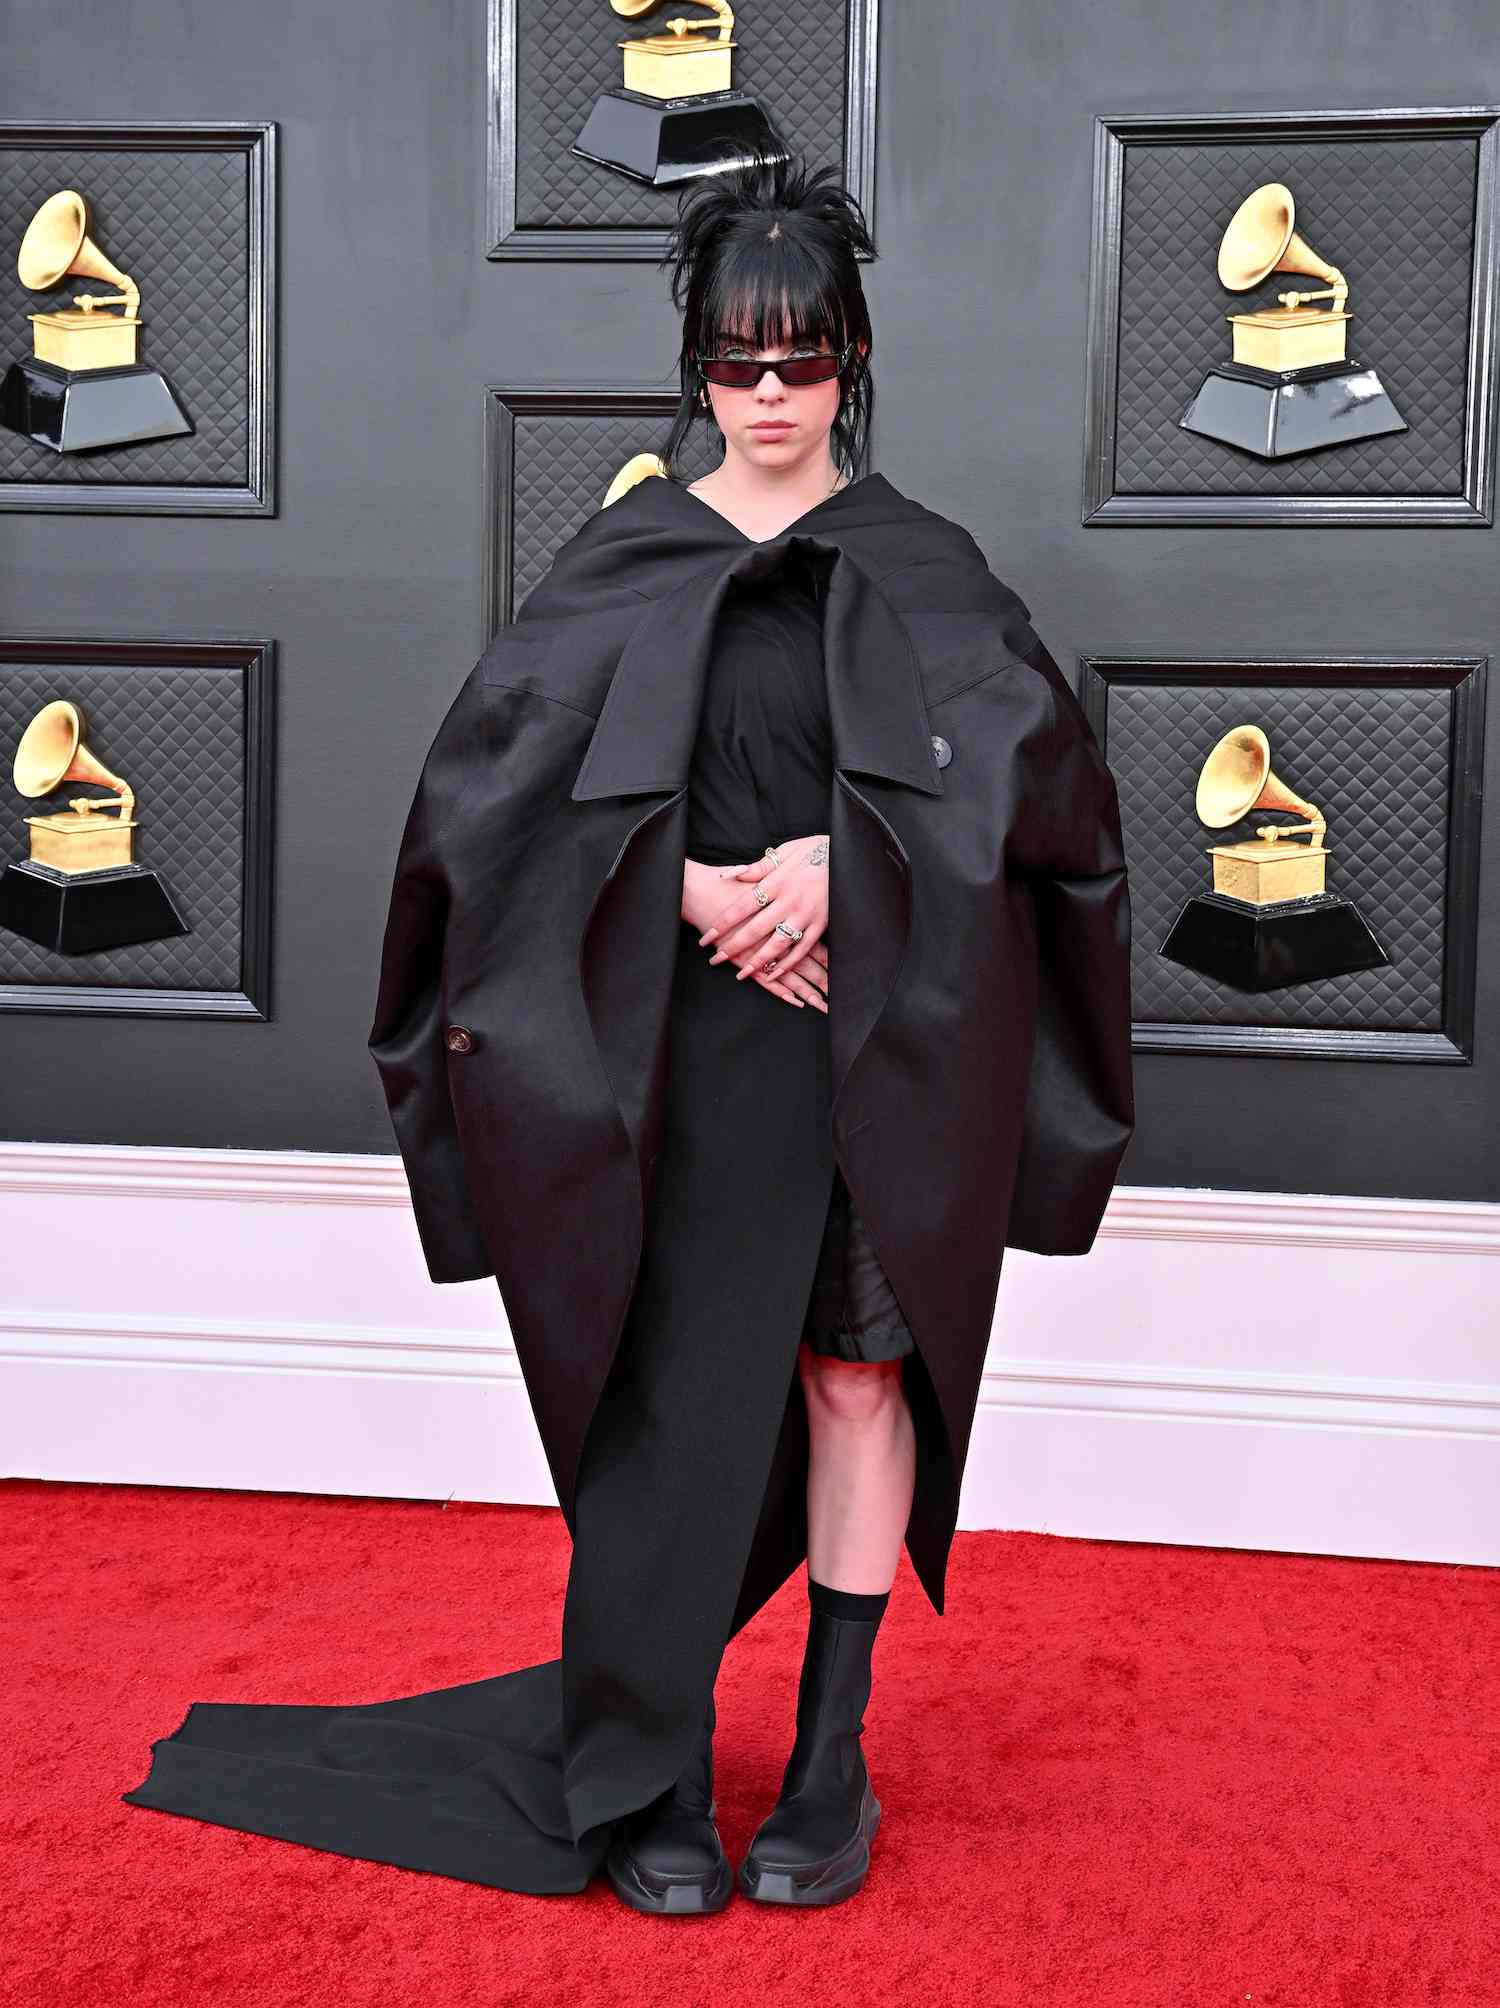 Billie Eilish usa vestido preto com capa Rick Owens, botins plataforma e óculos escuros no Grammy Awards de 2022